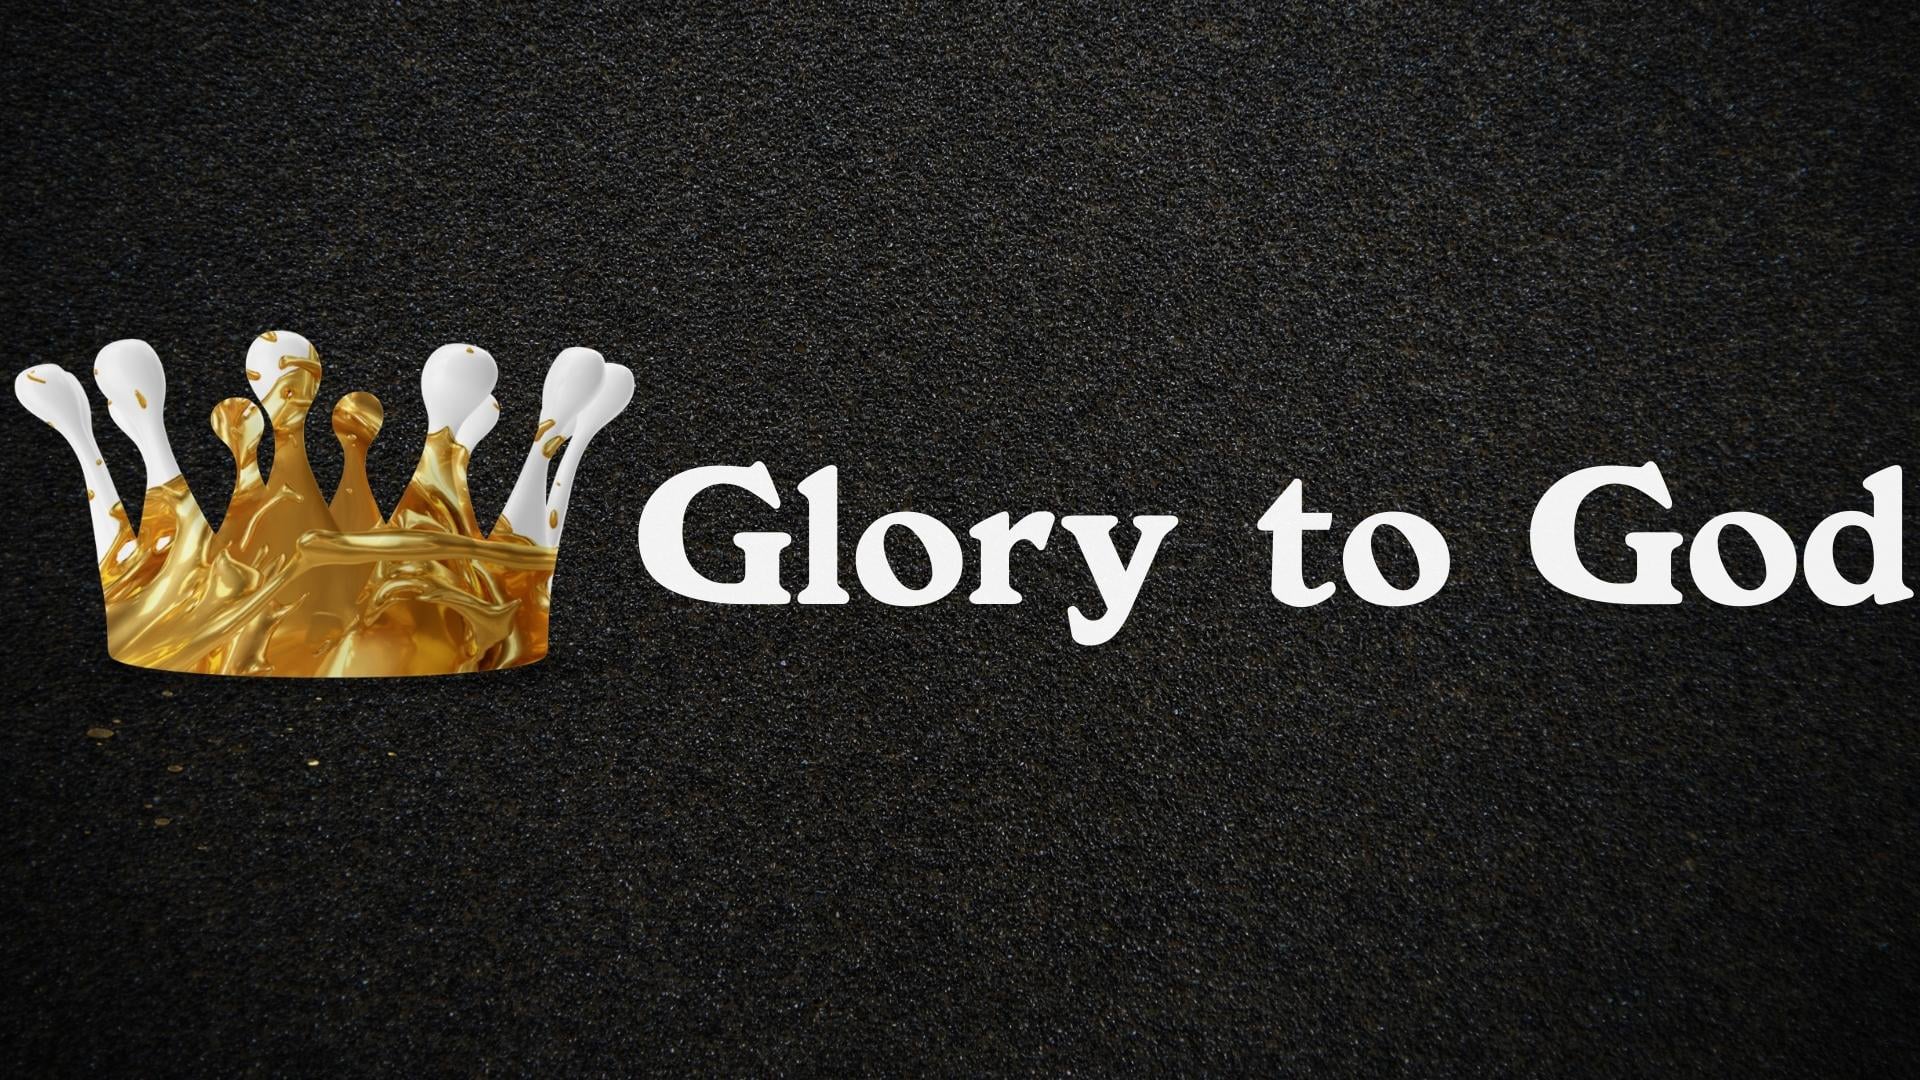 Glory to God - Week 8 June 12, 2022